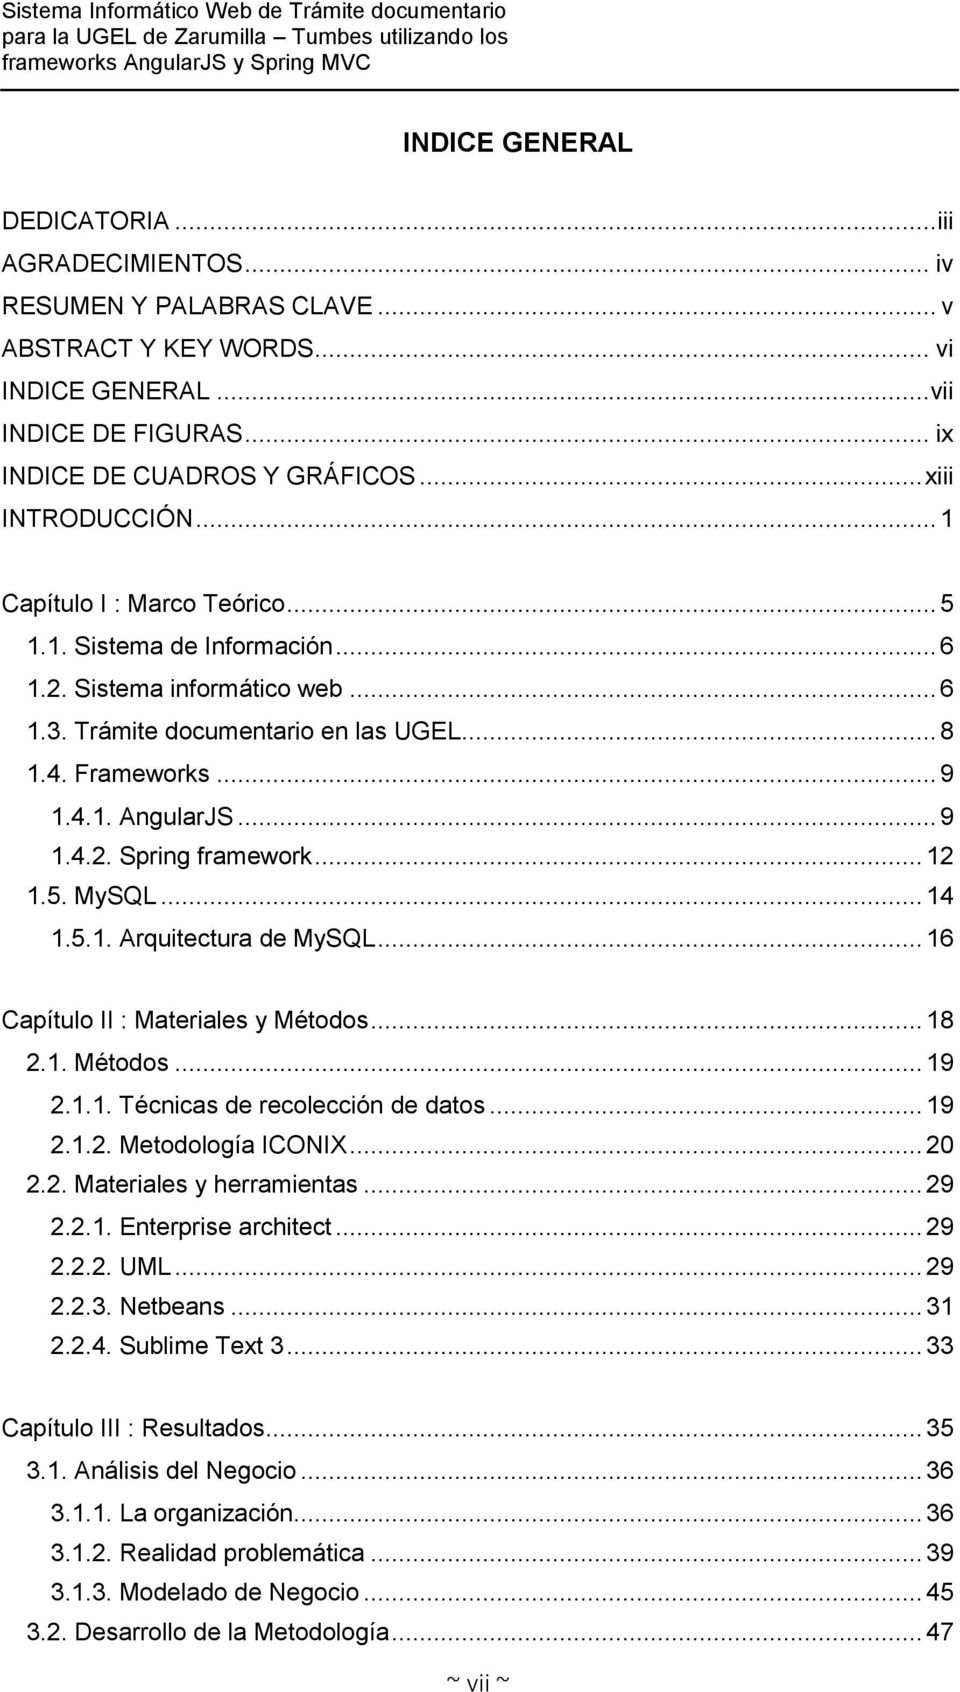 .. 9 1.4.2. Spring framework... 12 1.5. MySQL... 14 1.5.1. Arquitectura de MySQL... 16 Capítulo II : Materiales y Métodos... 18 2.1. Métodos... 19 2.1.1. Técnicas de recolección de datos... 19 2.1.2. Metodología ICONIX.